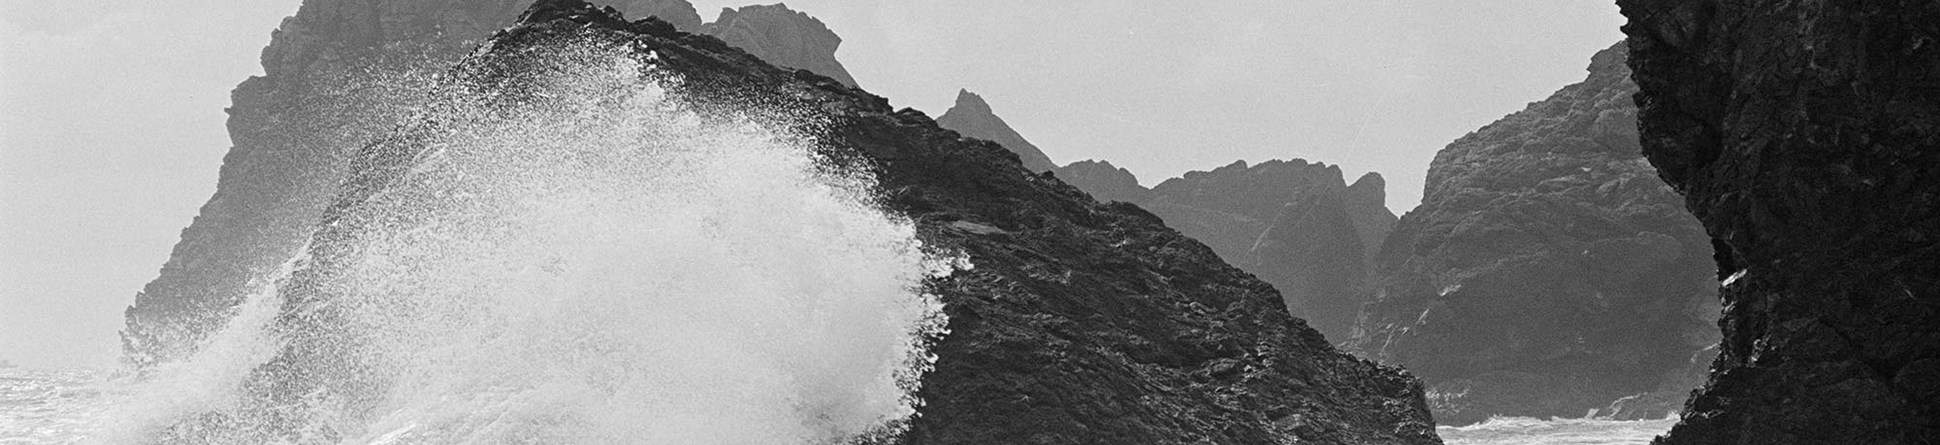 Waves crashing over rocky outcrops